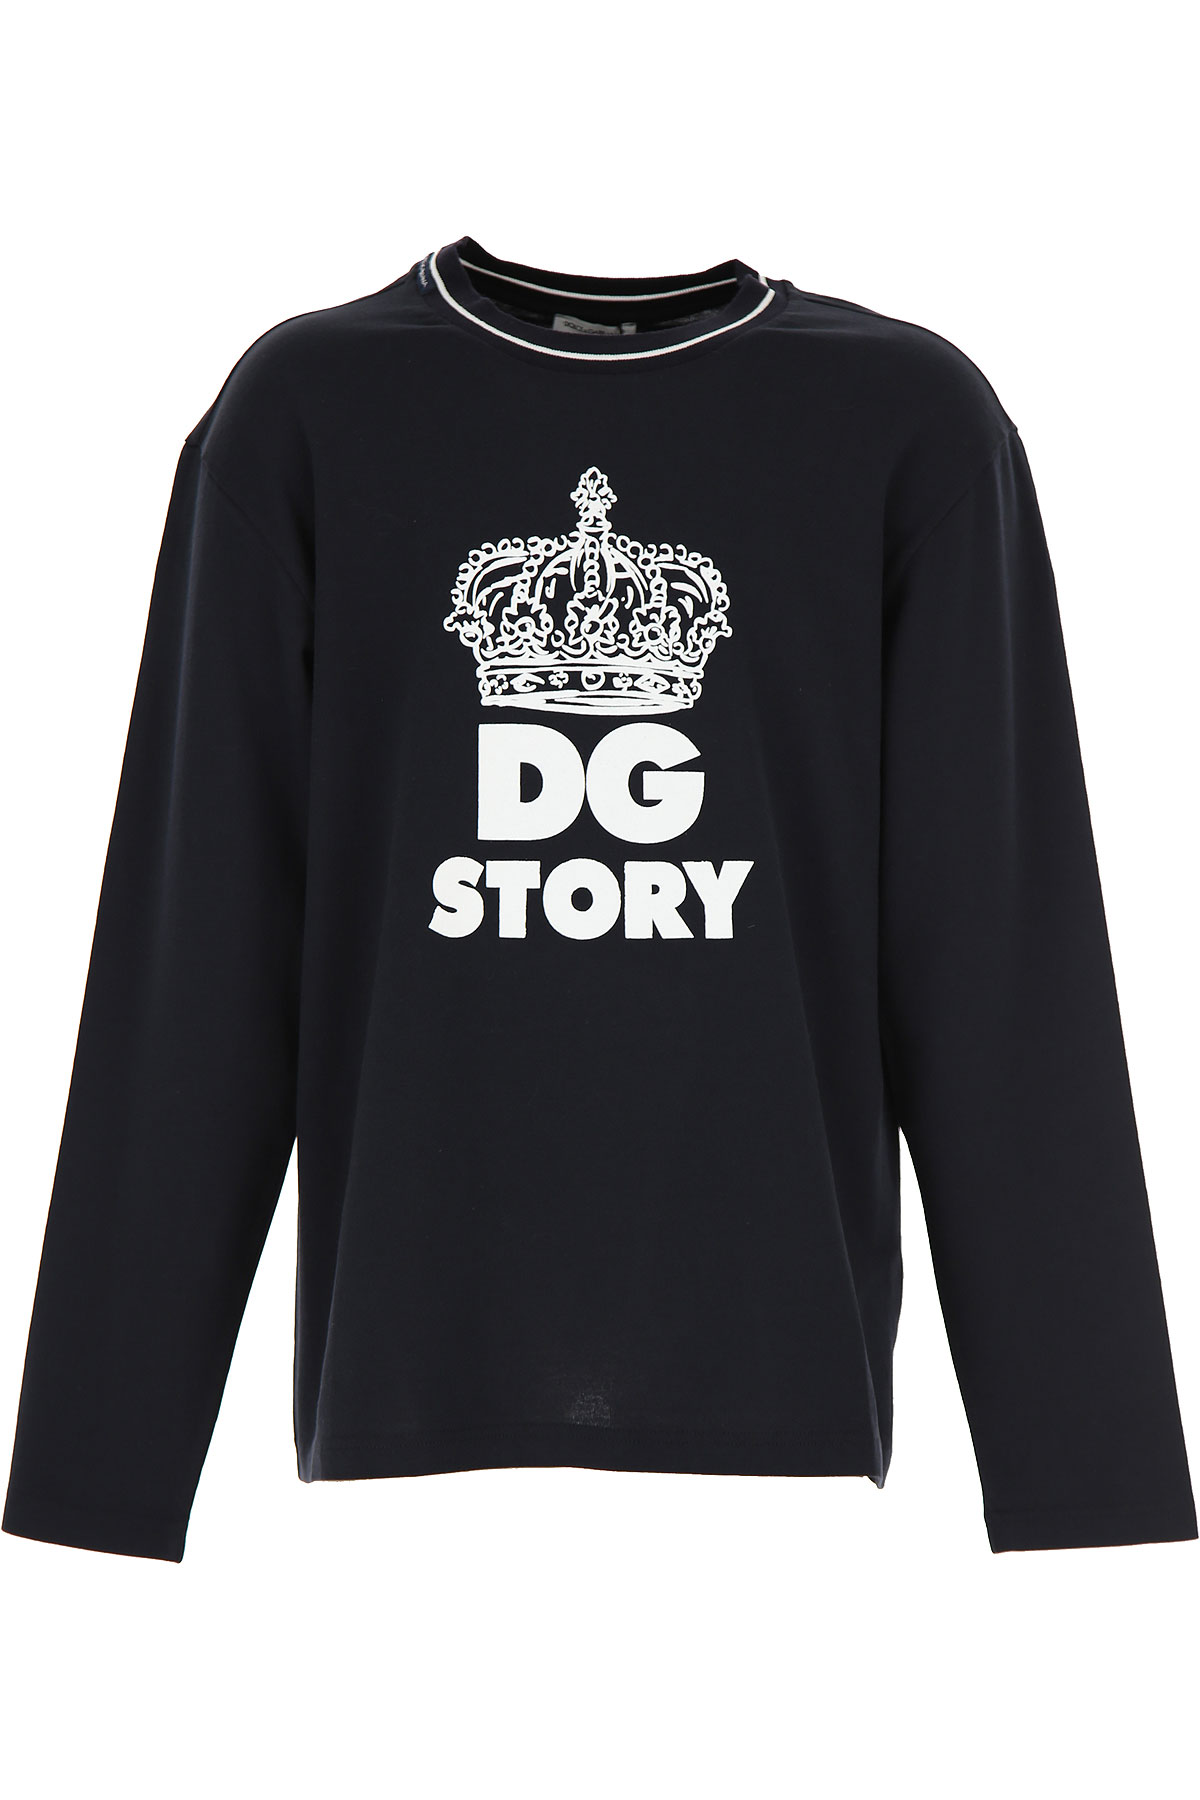 Dolce & Gabbana Kinder T-Shirt für Jungen Günstig im Sale, Blau, Baumwolle, 2017, 10Y 12Y 3Y 4Y 6Y 8Y